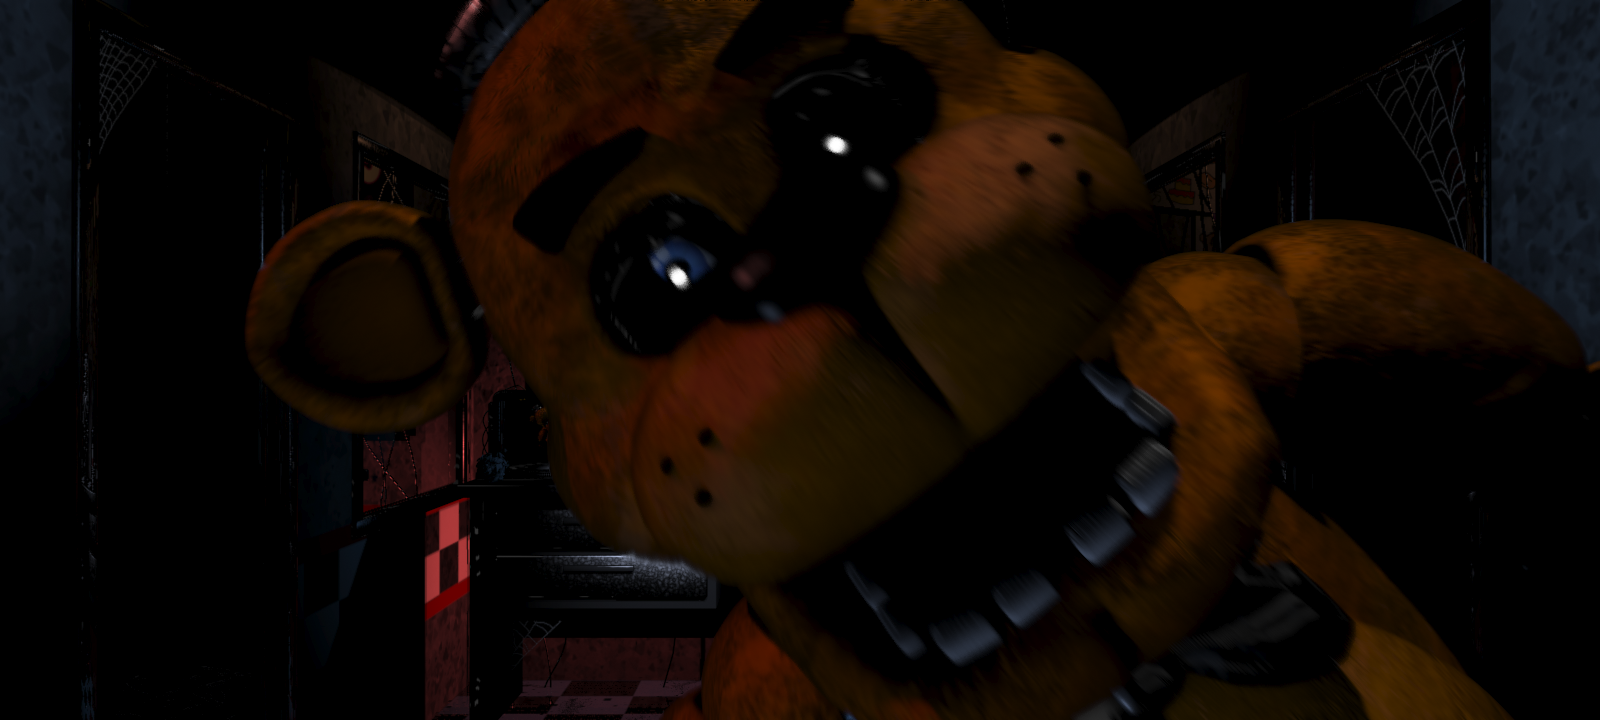 Análise: Five Nights at Freddy's (iOS/Android) é terror e vício na